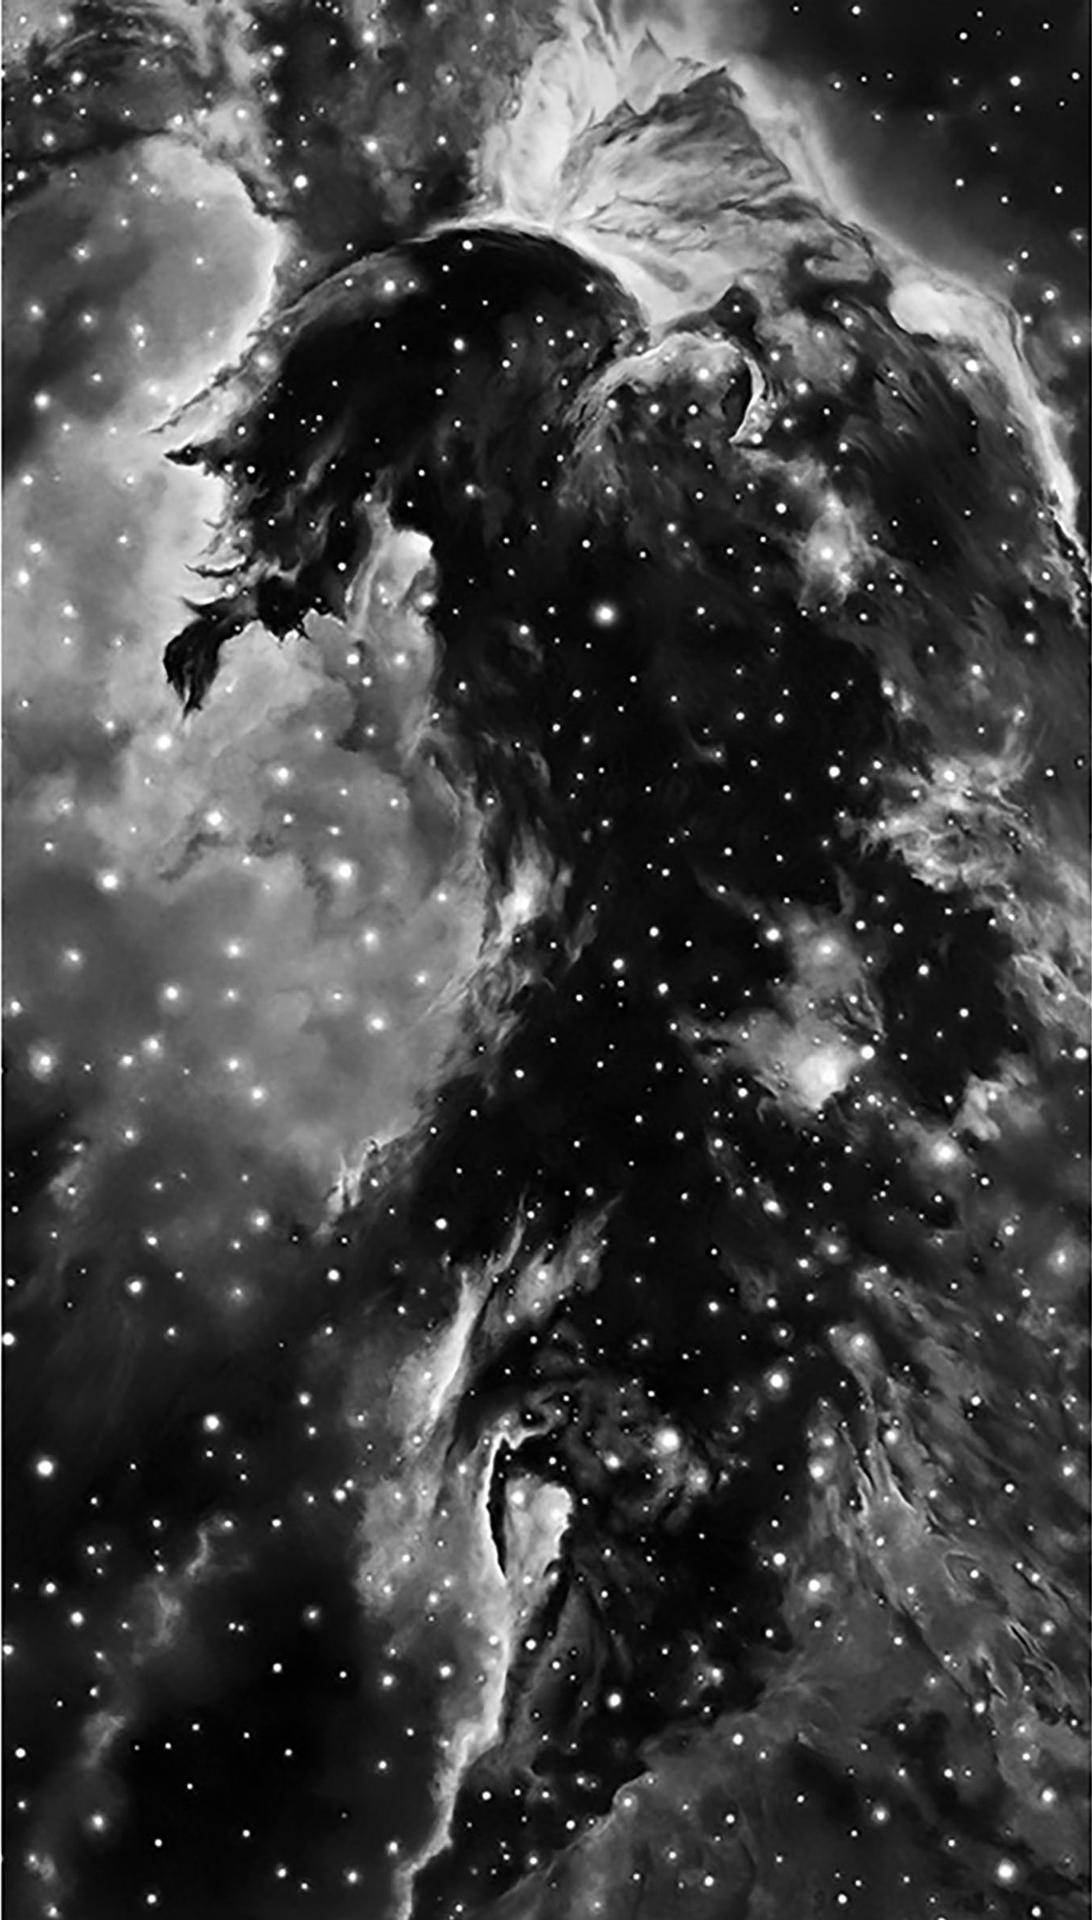 Robert Longo (1953) - Horsehead Nebula, 2008